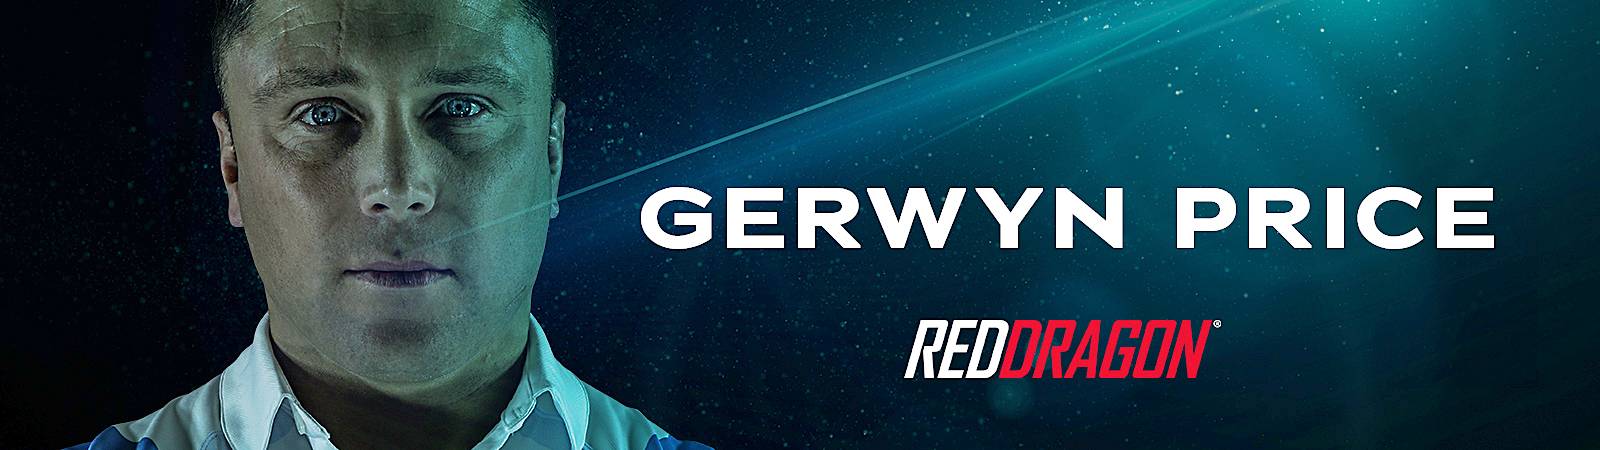 red-dragon-gerwyn-price